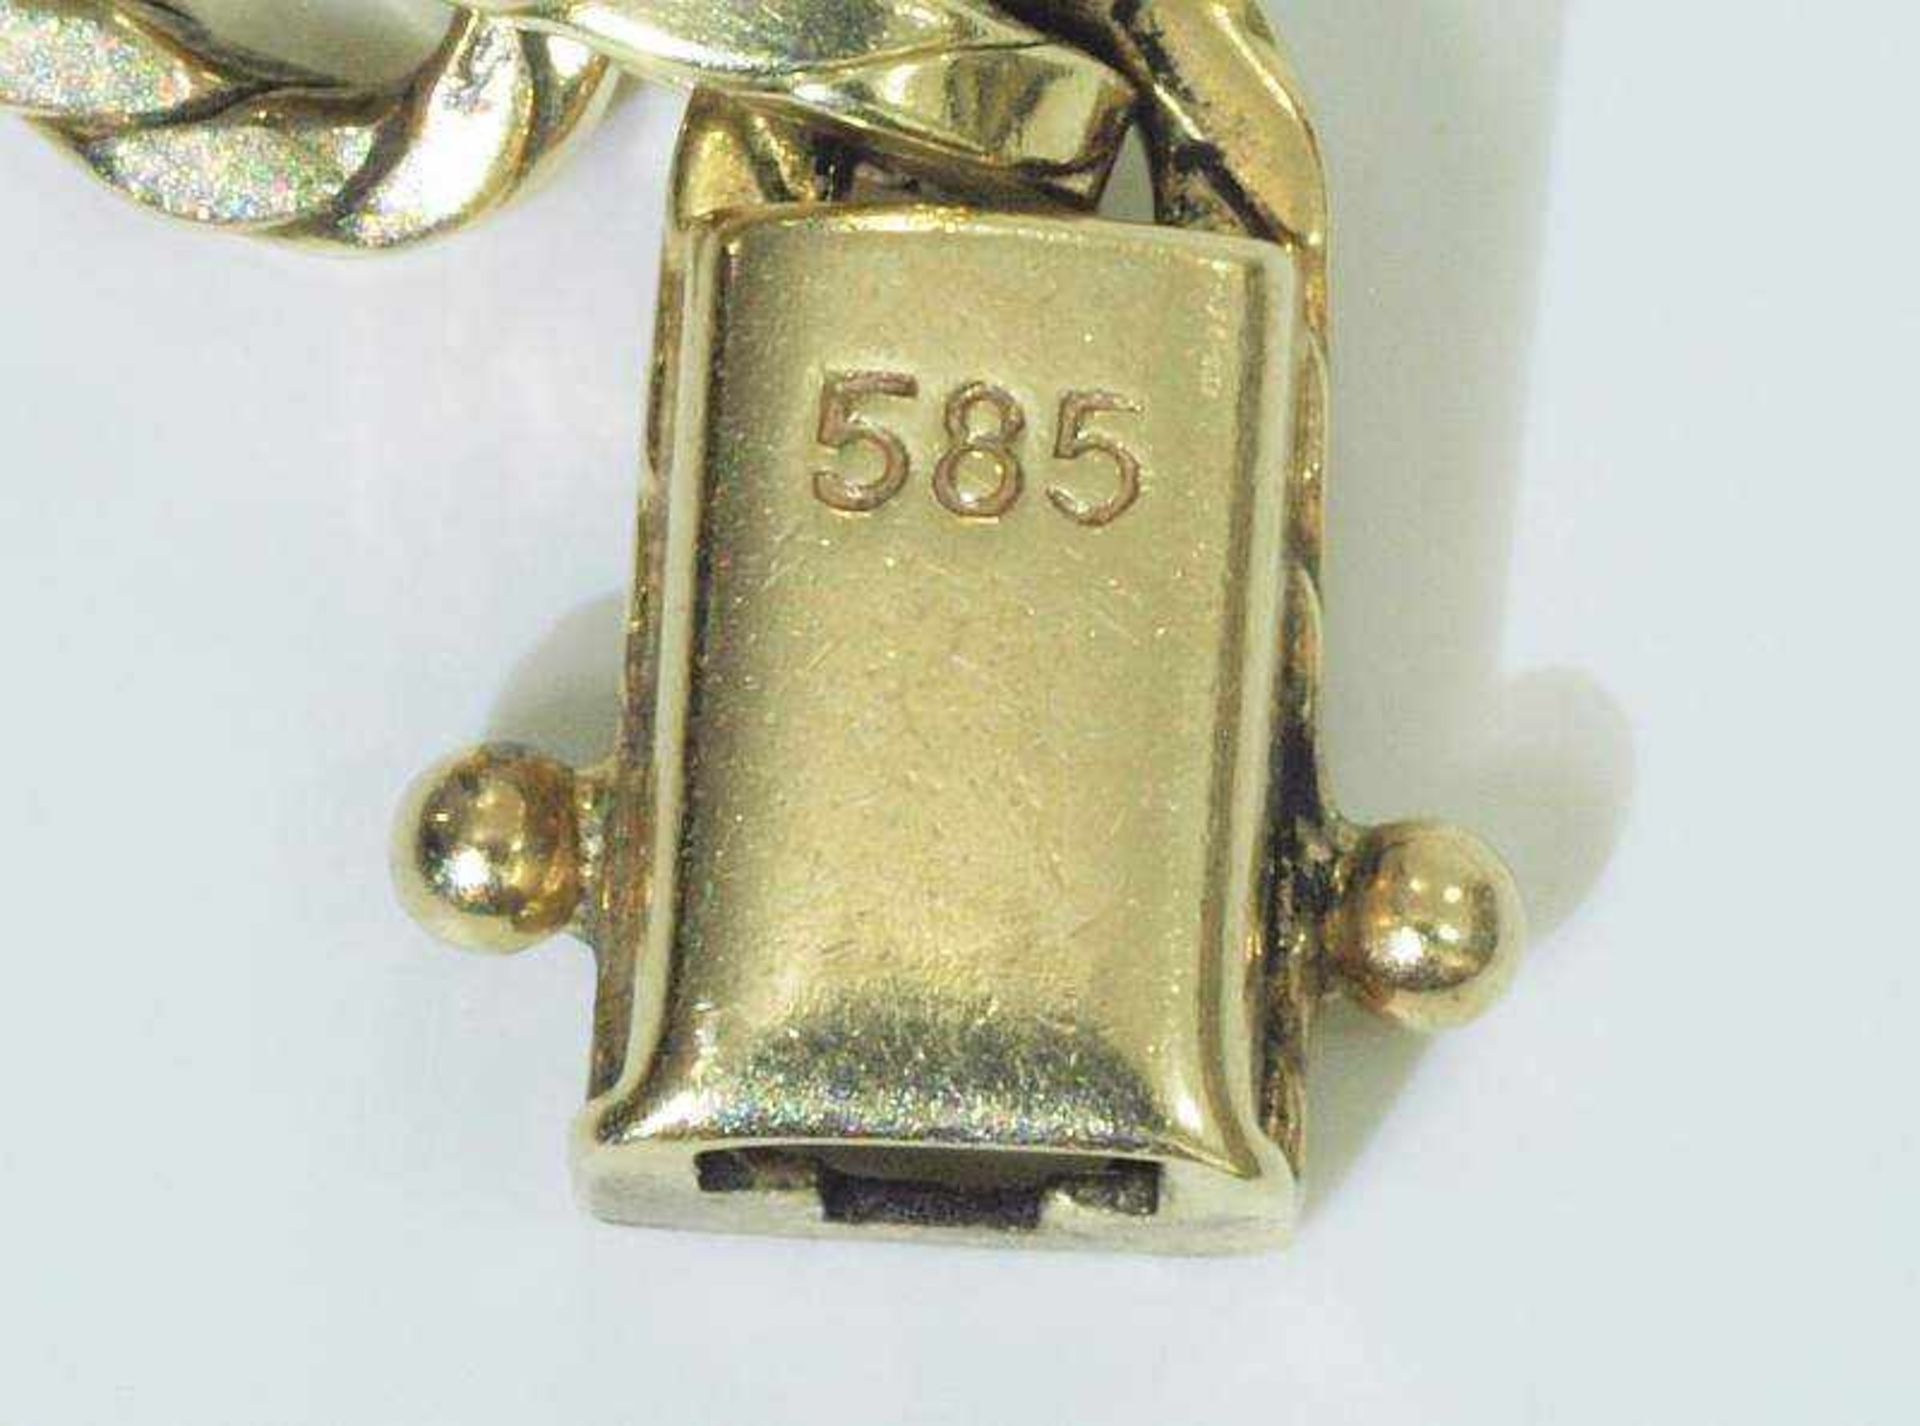 Armband mit strukturierten Gliedern.Armband mit strukturierten Gliedern. 585er Gelbgold, - Bild 5 aus 5